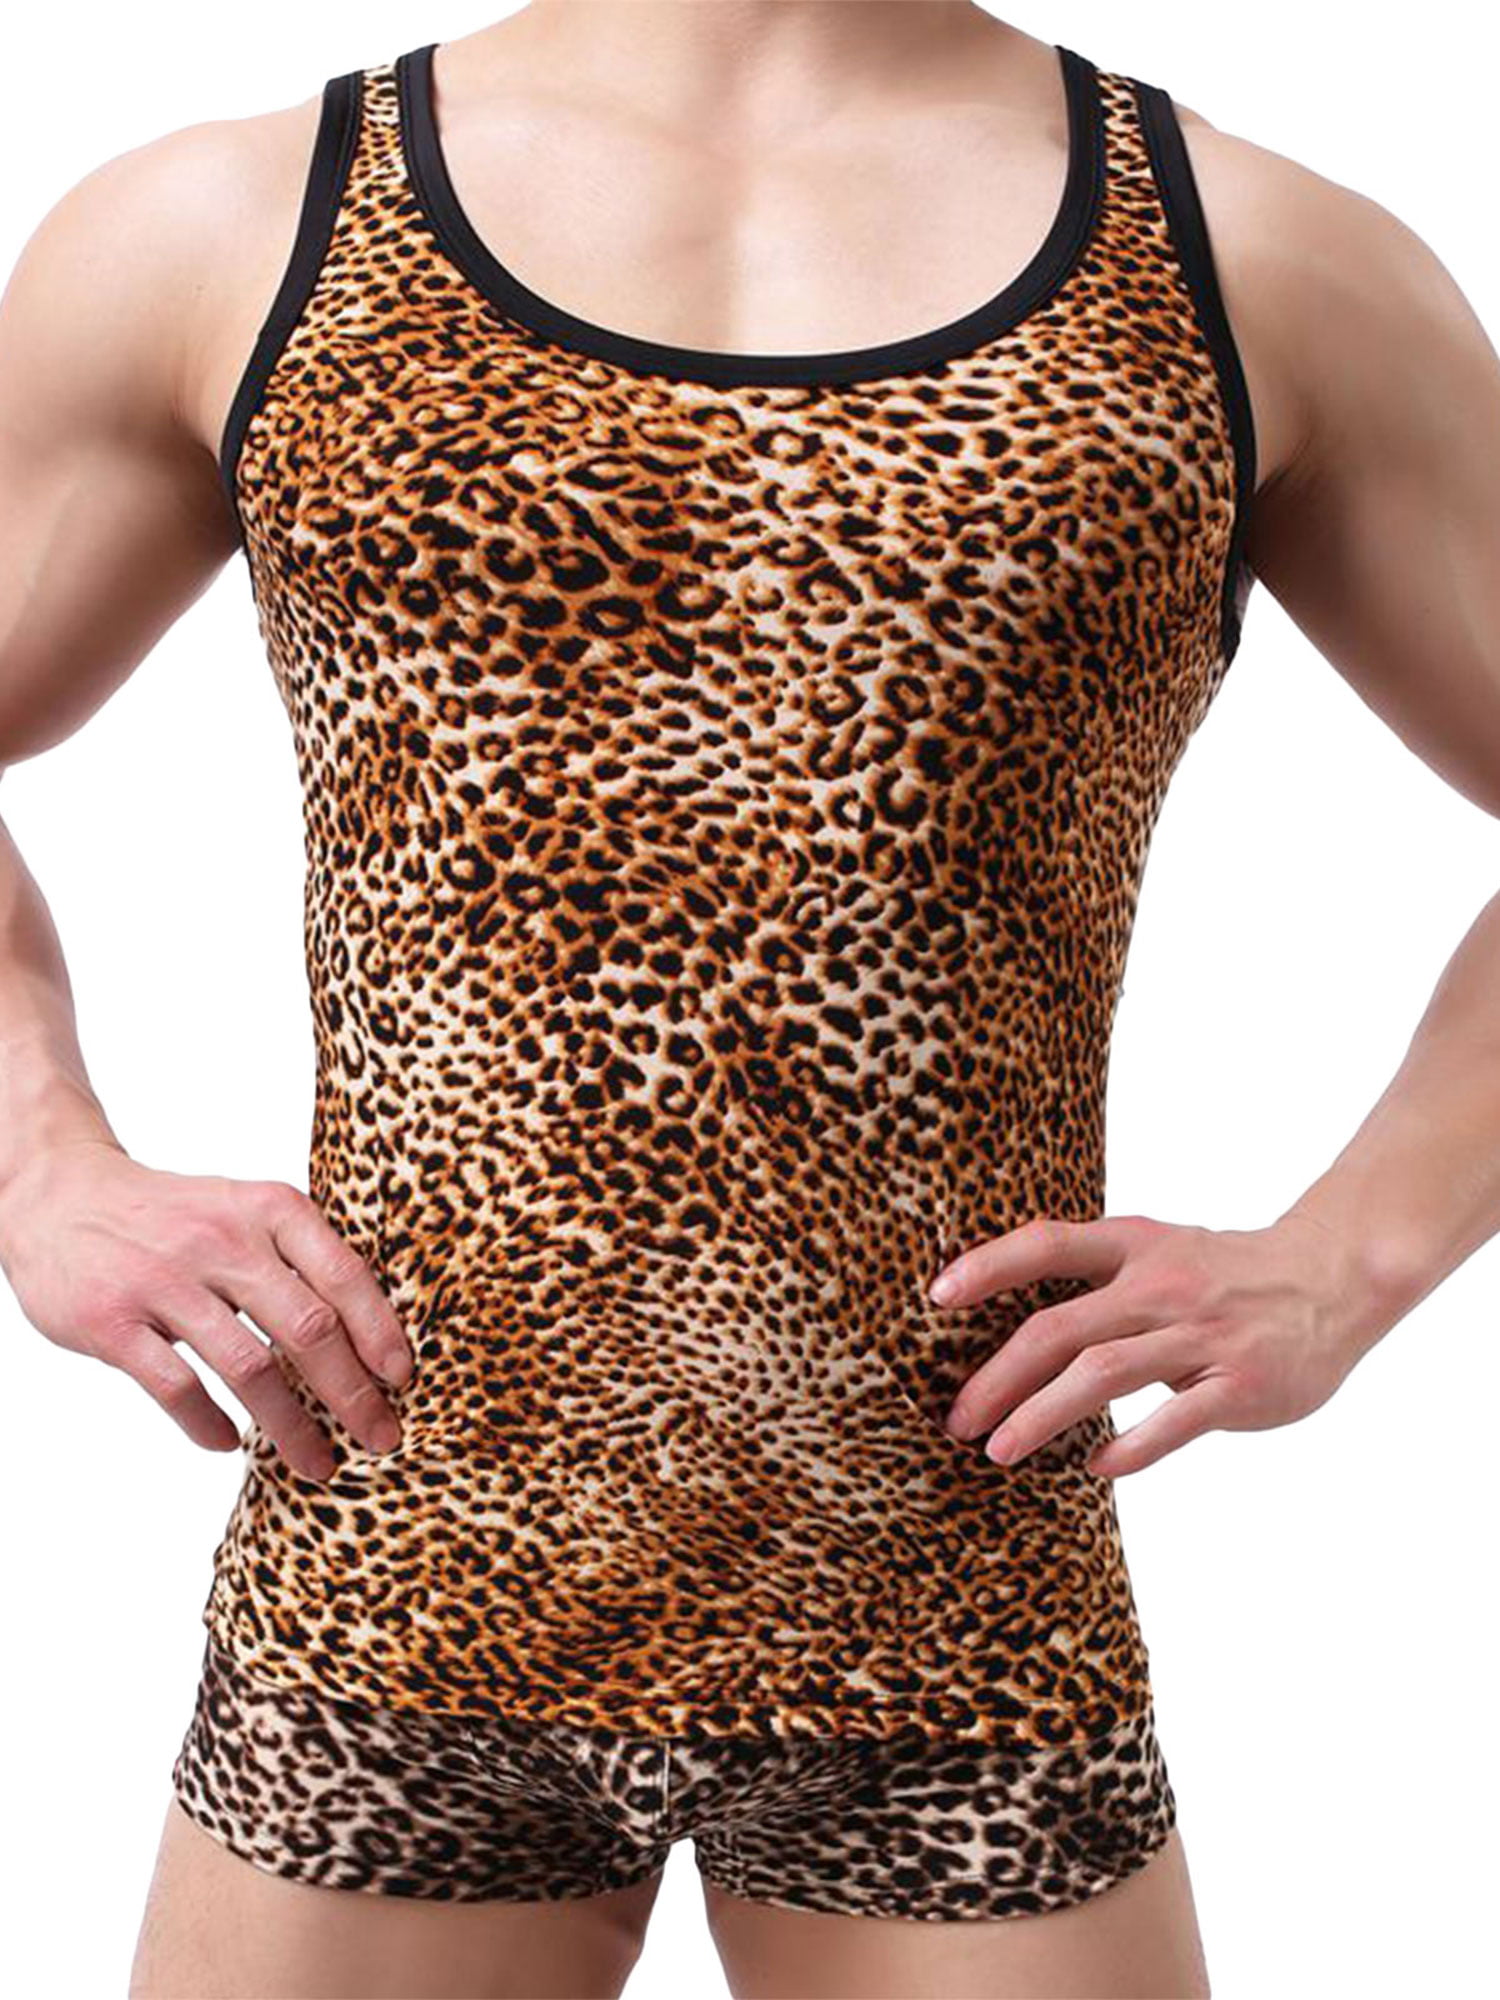 TTIWEP-A Leopard Background Summer Mens Sleeveless T-Shirt Comfort Cotton Fitness Workout Tank Top